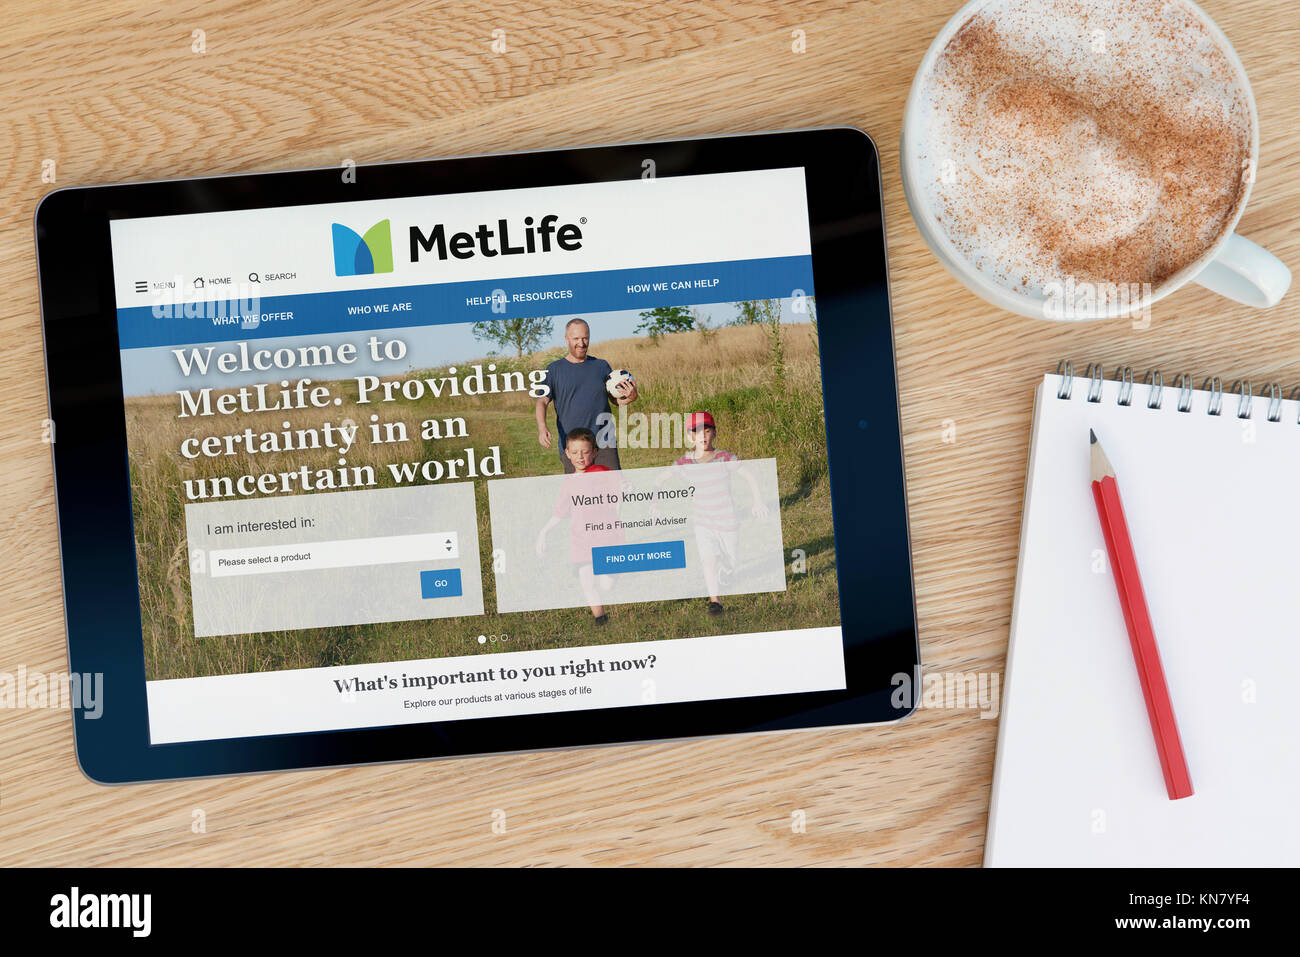 Le MetLife site sur un iPad tablet device qui repose sur une table en bois à côté d'un bloc-notes et un crayon et une tasse de café (rédaction uniquement) Banque D'Images